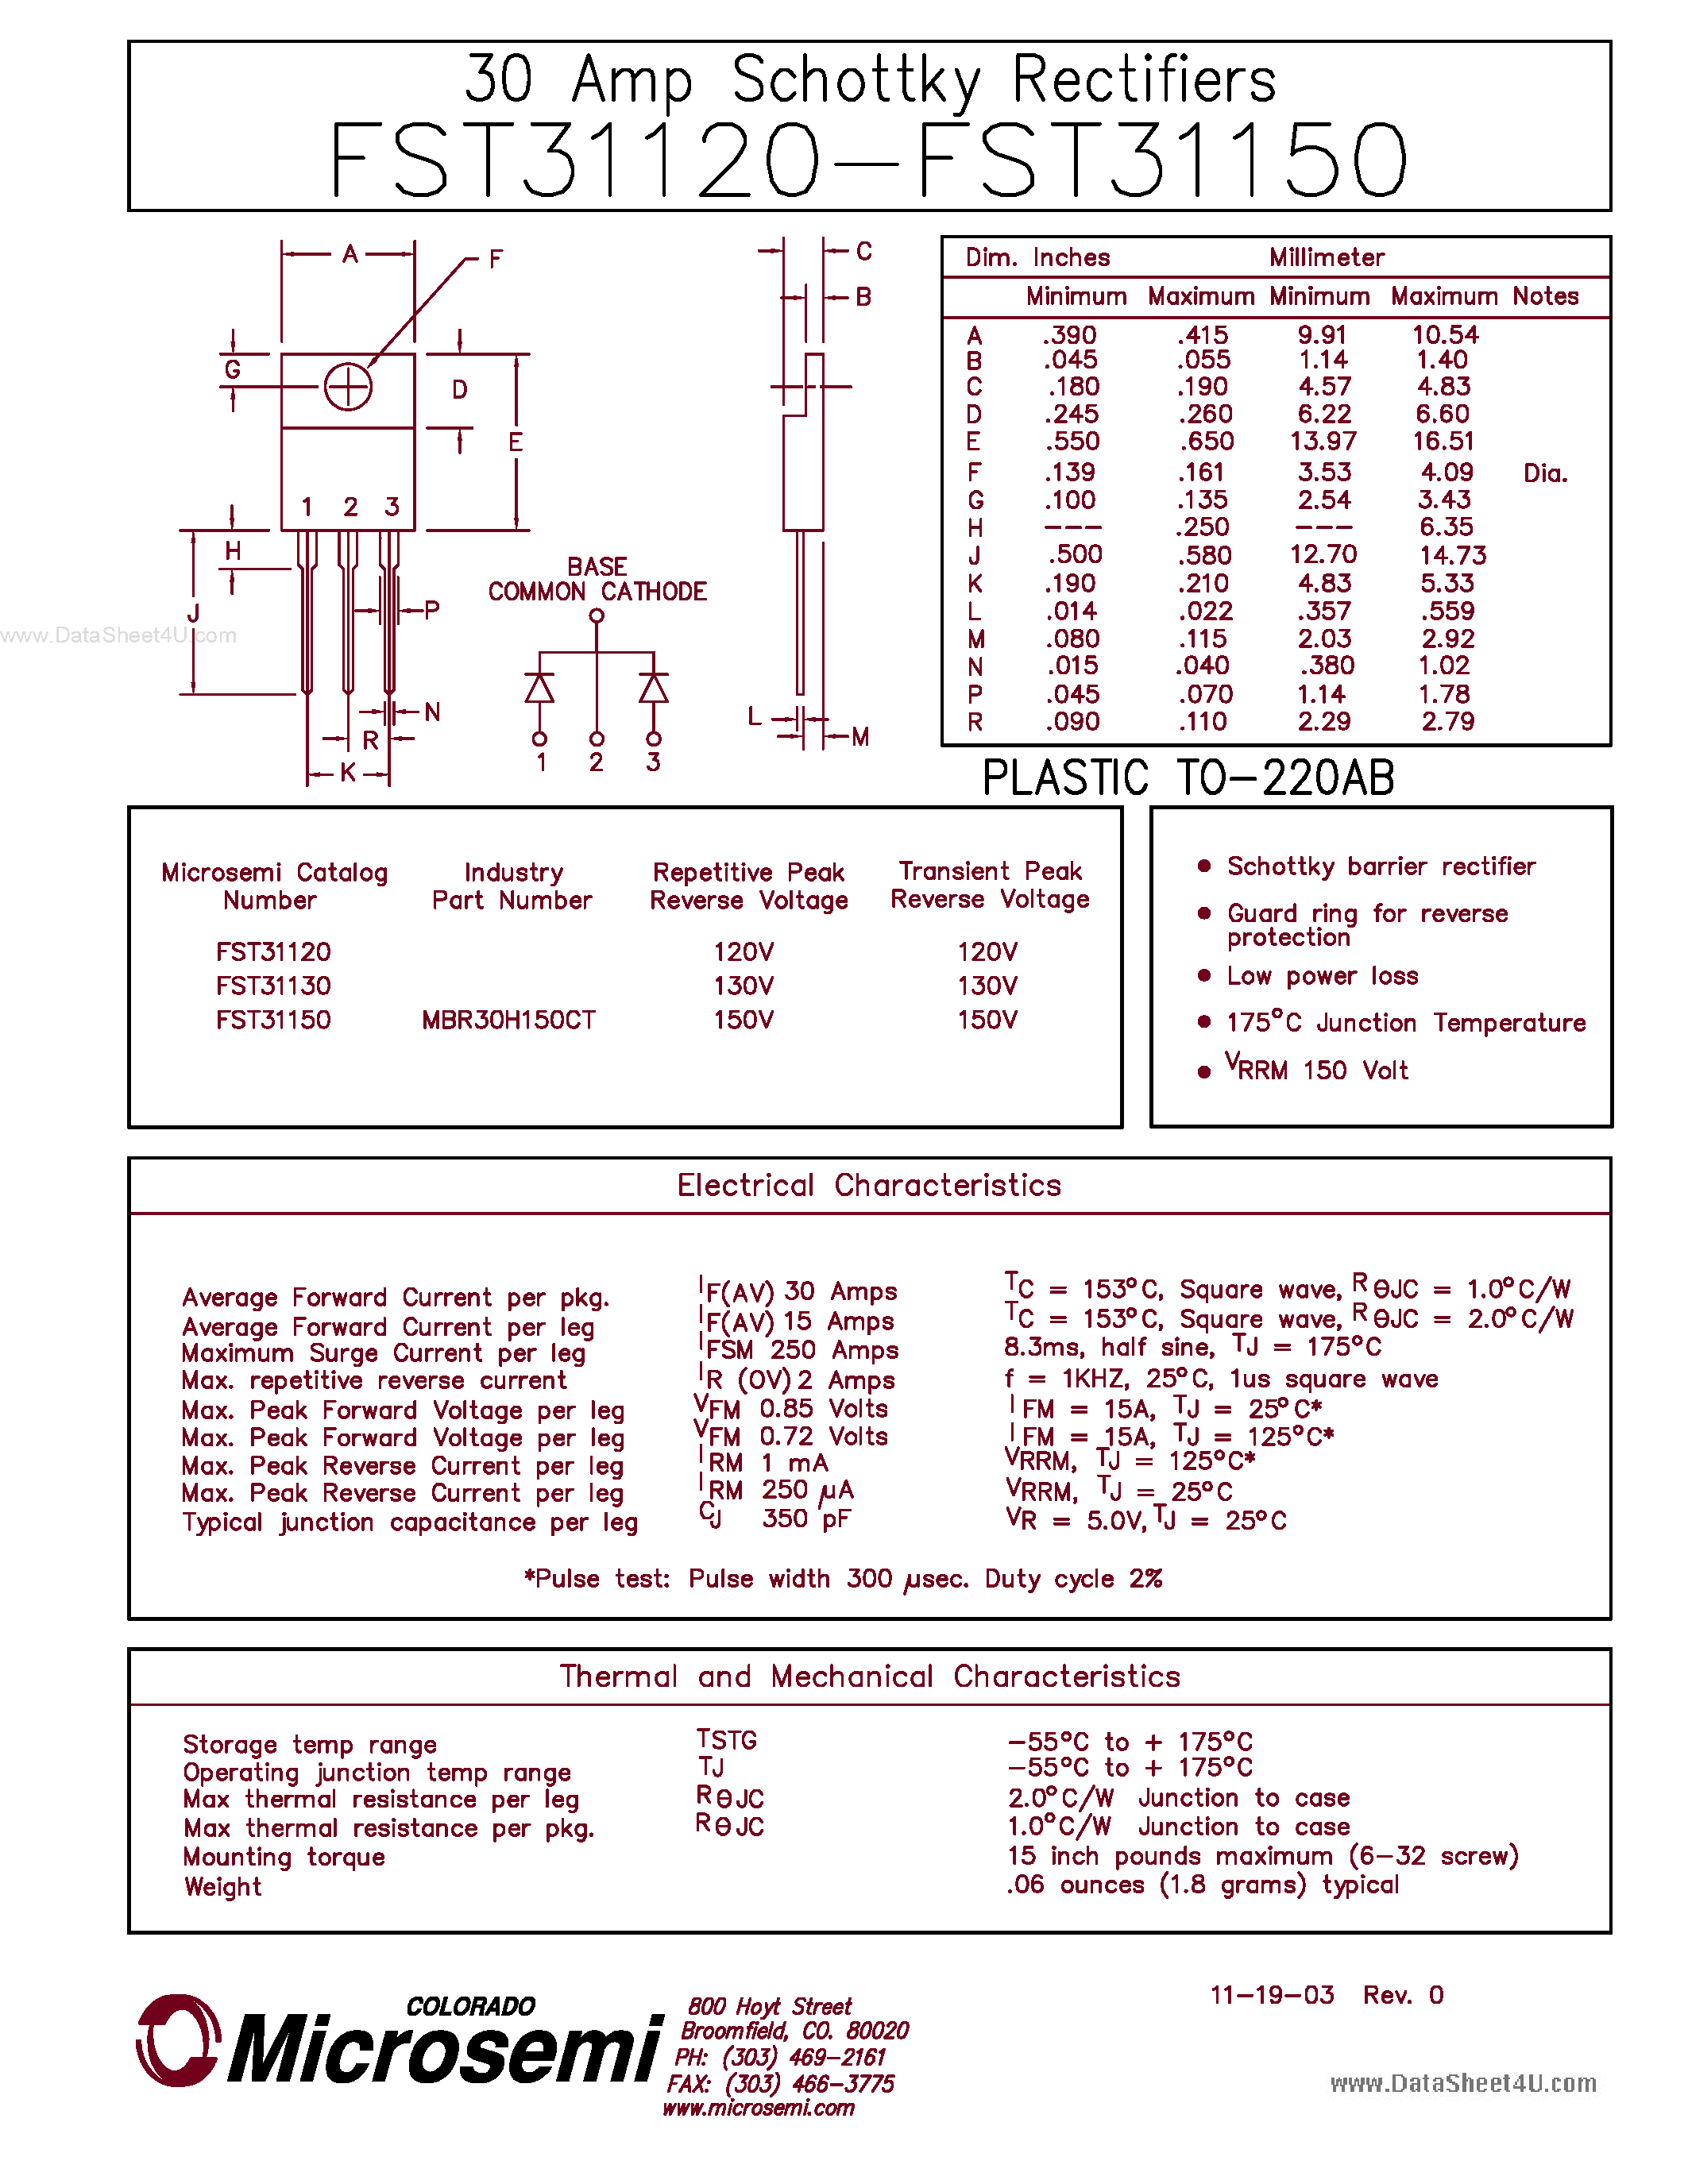 Datasheet FST31120 - (FST31120 - FST31150) 30 AMP SCHOTTKY RECTIFIERS page 1